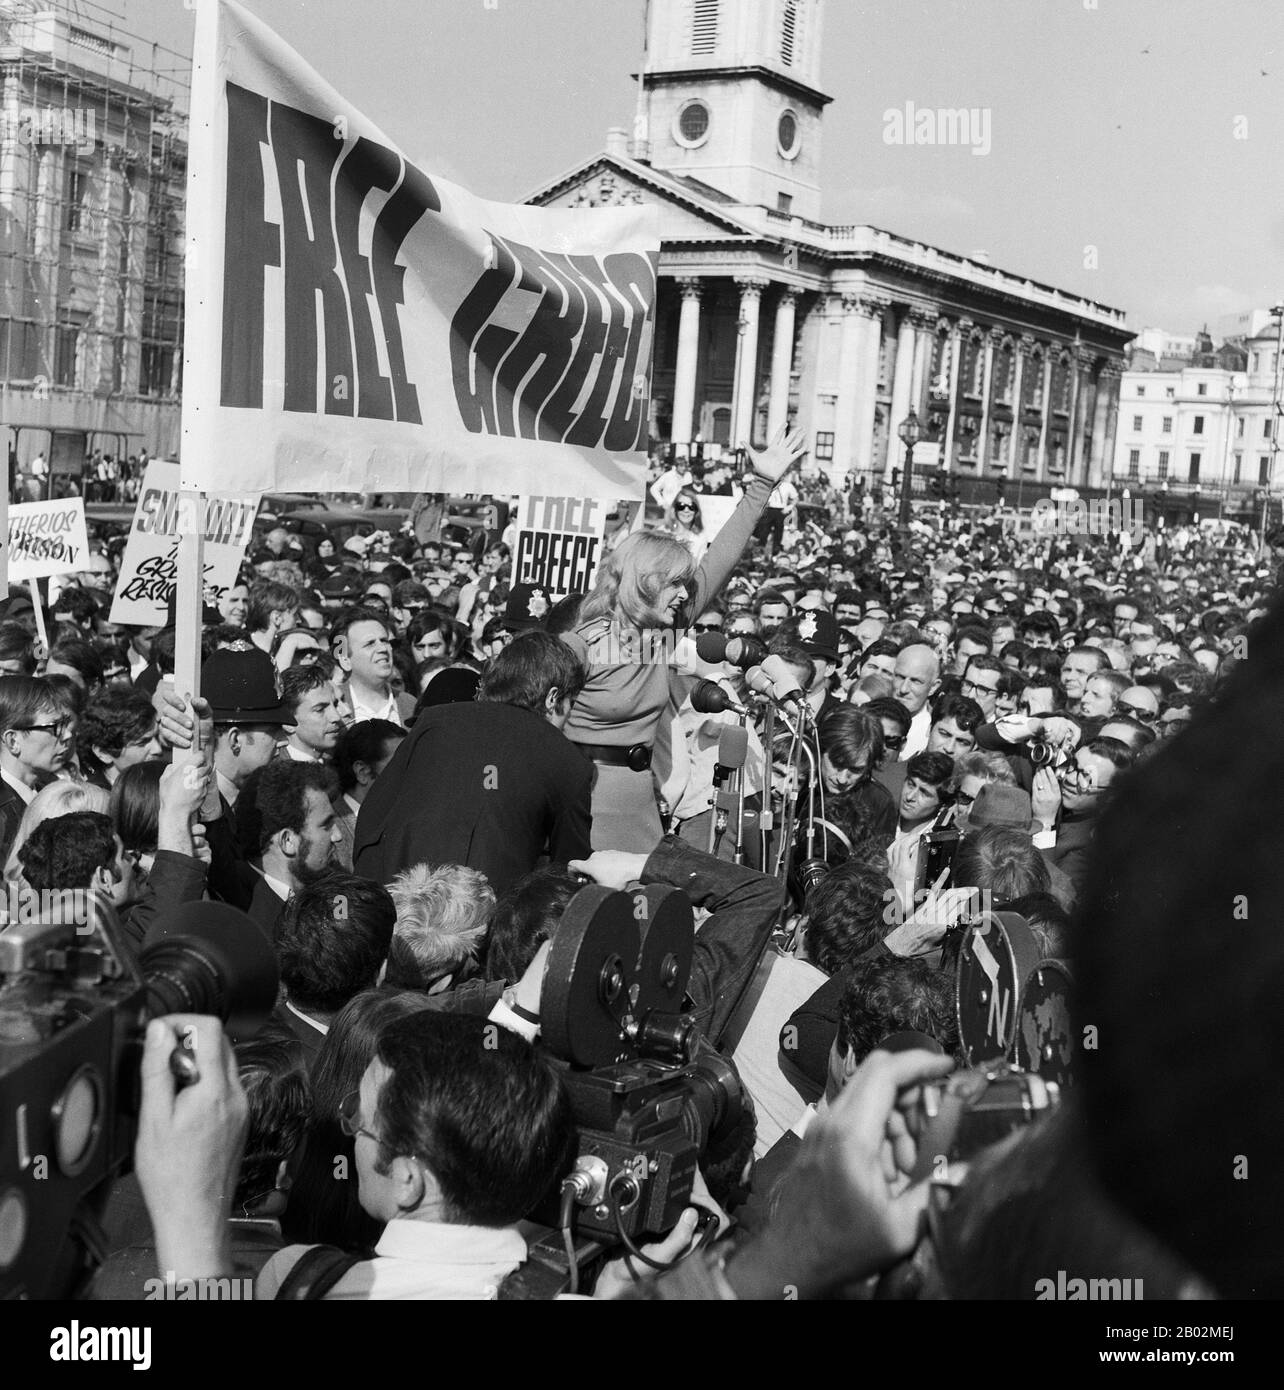 Melina Mercouri, griechische Schauspielerin (Mitte), spricht bei einer Demonstration für ein Griechenland ohne Militärjunta in London, Großbritannien 1968. Greek actress Melina Mercouri (center) speaking at Free Greece from Military Junta protest, Trafalgar Square London, United Kingdom 1968. Stock Photo